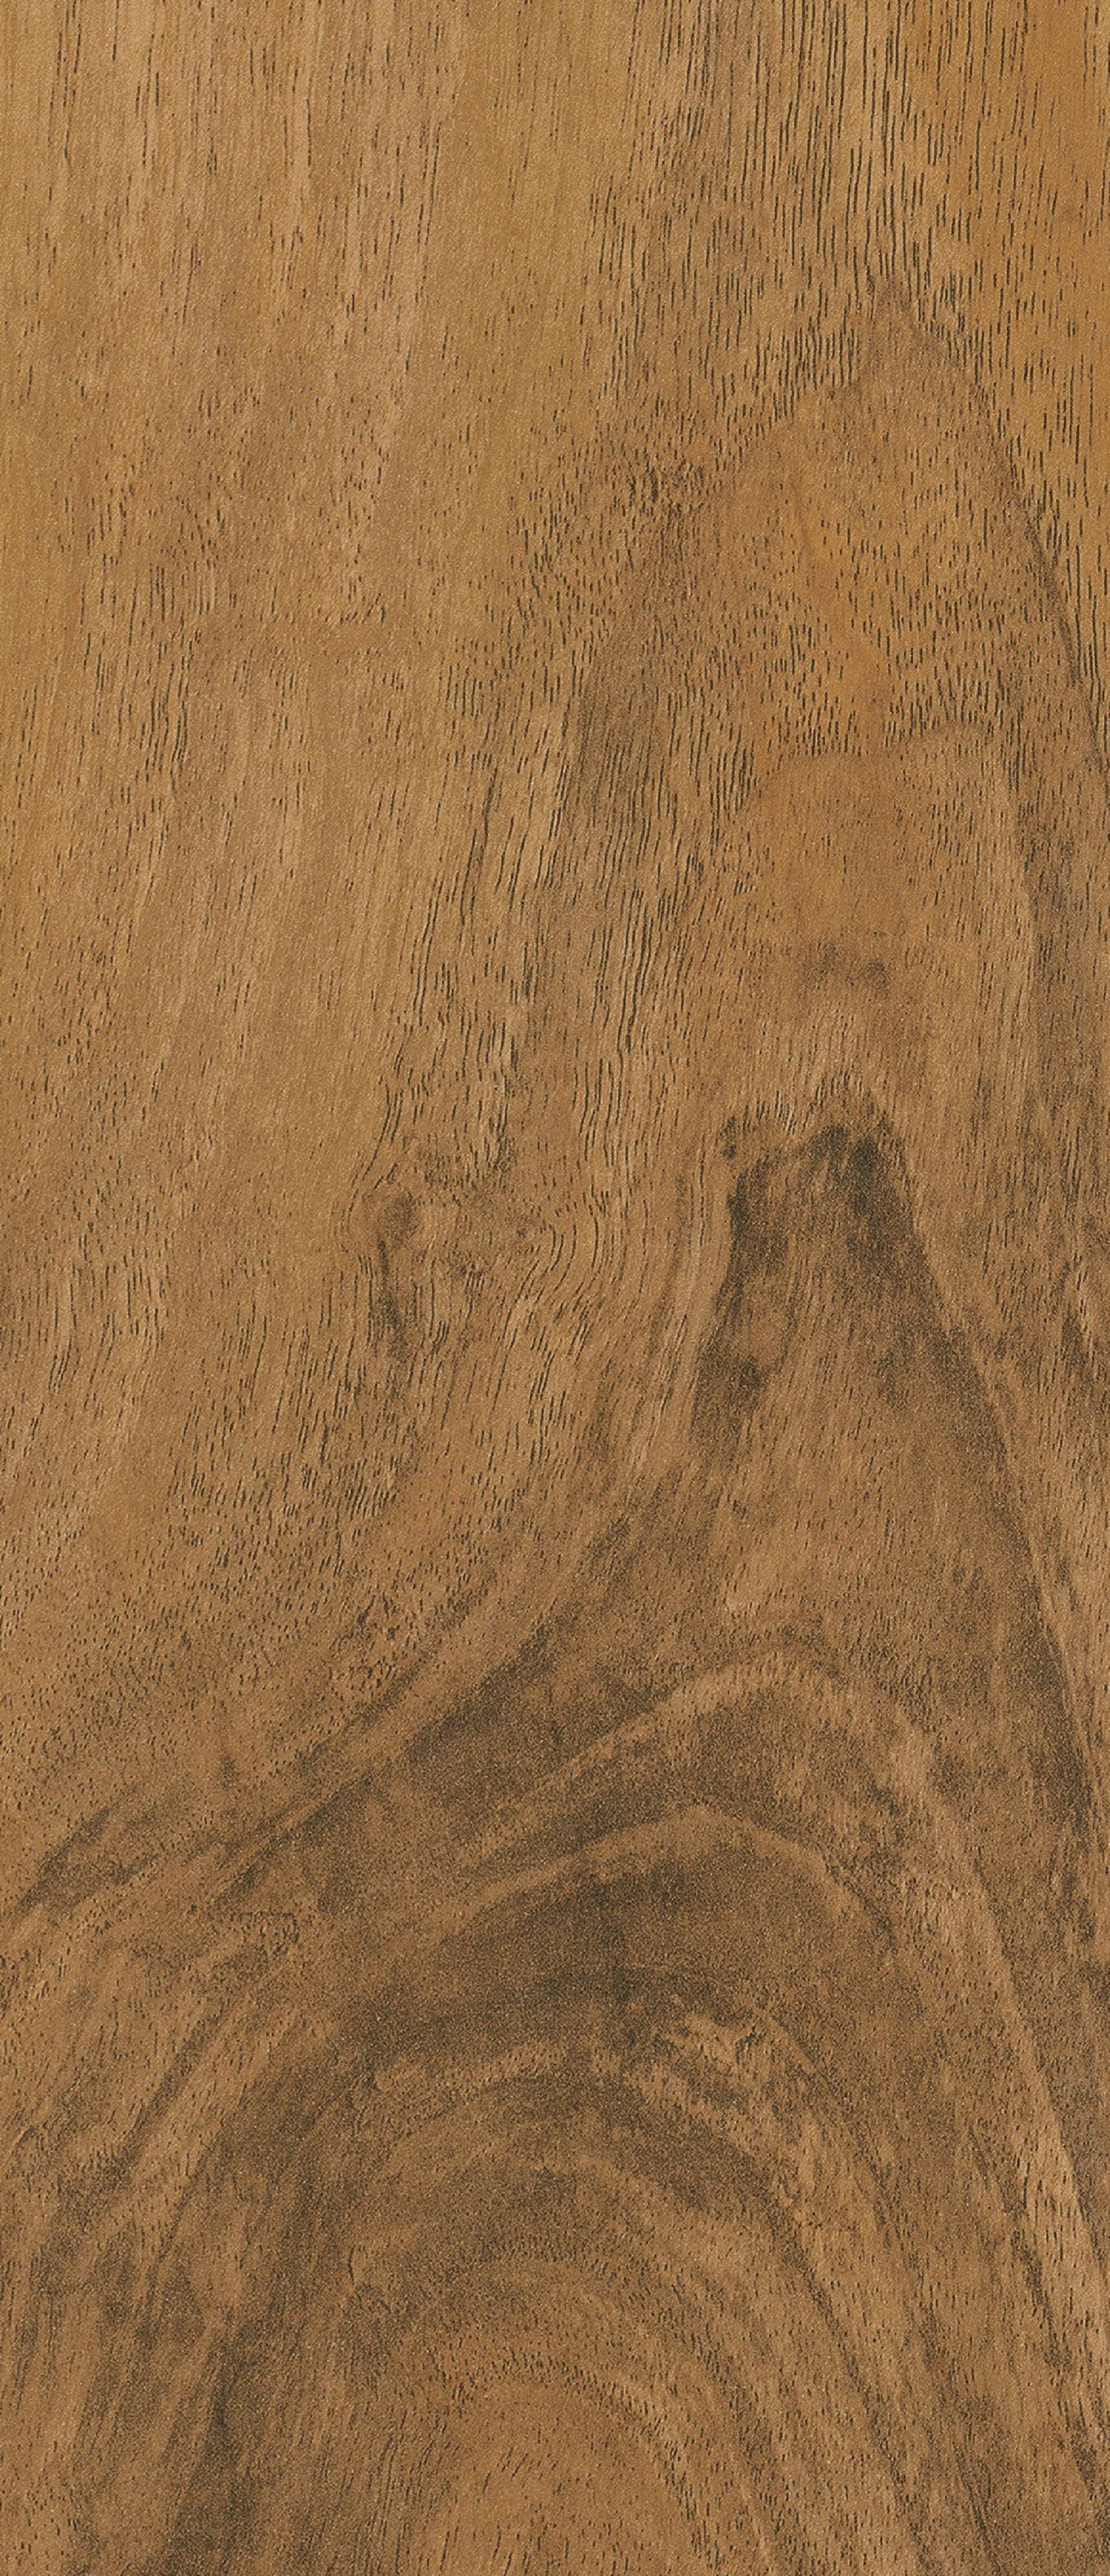 High Gloss Medium Oak 8mm Laminate Flooring - Sample